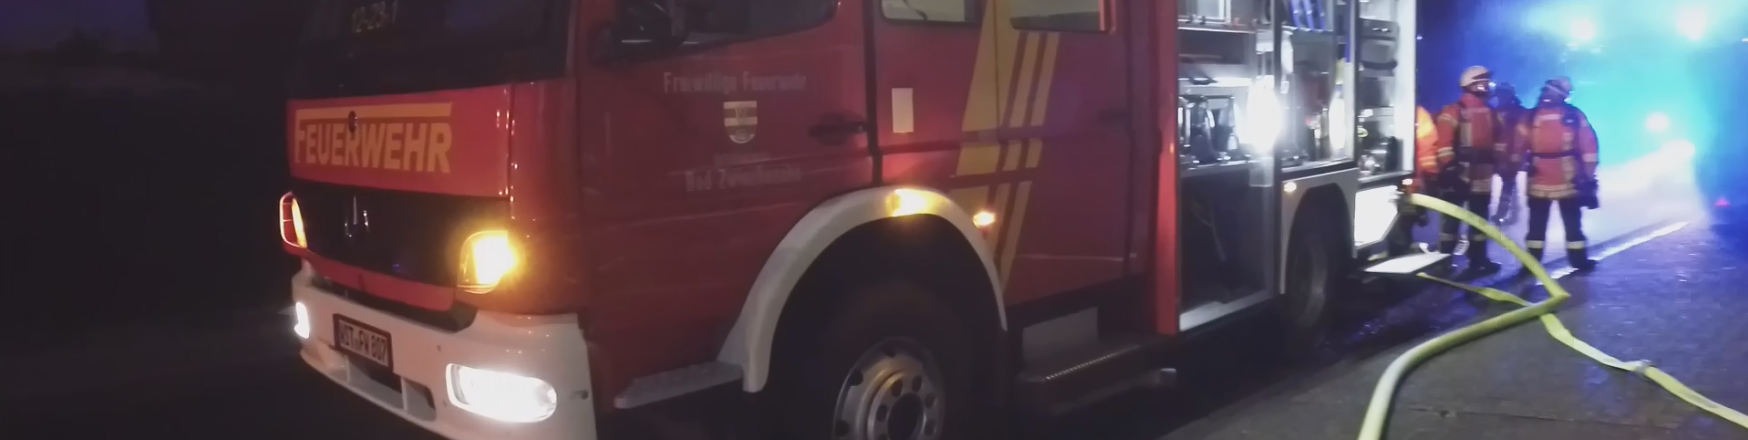 Feuerwehr Bad Zwischenahn